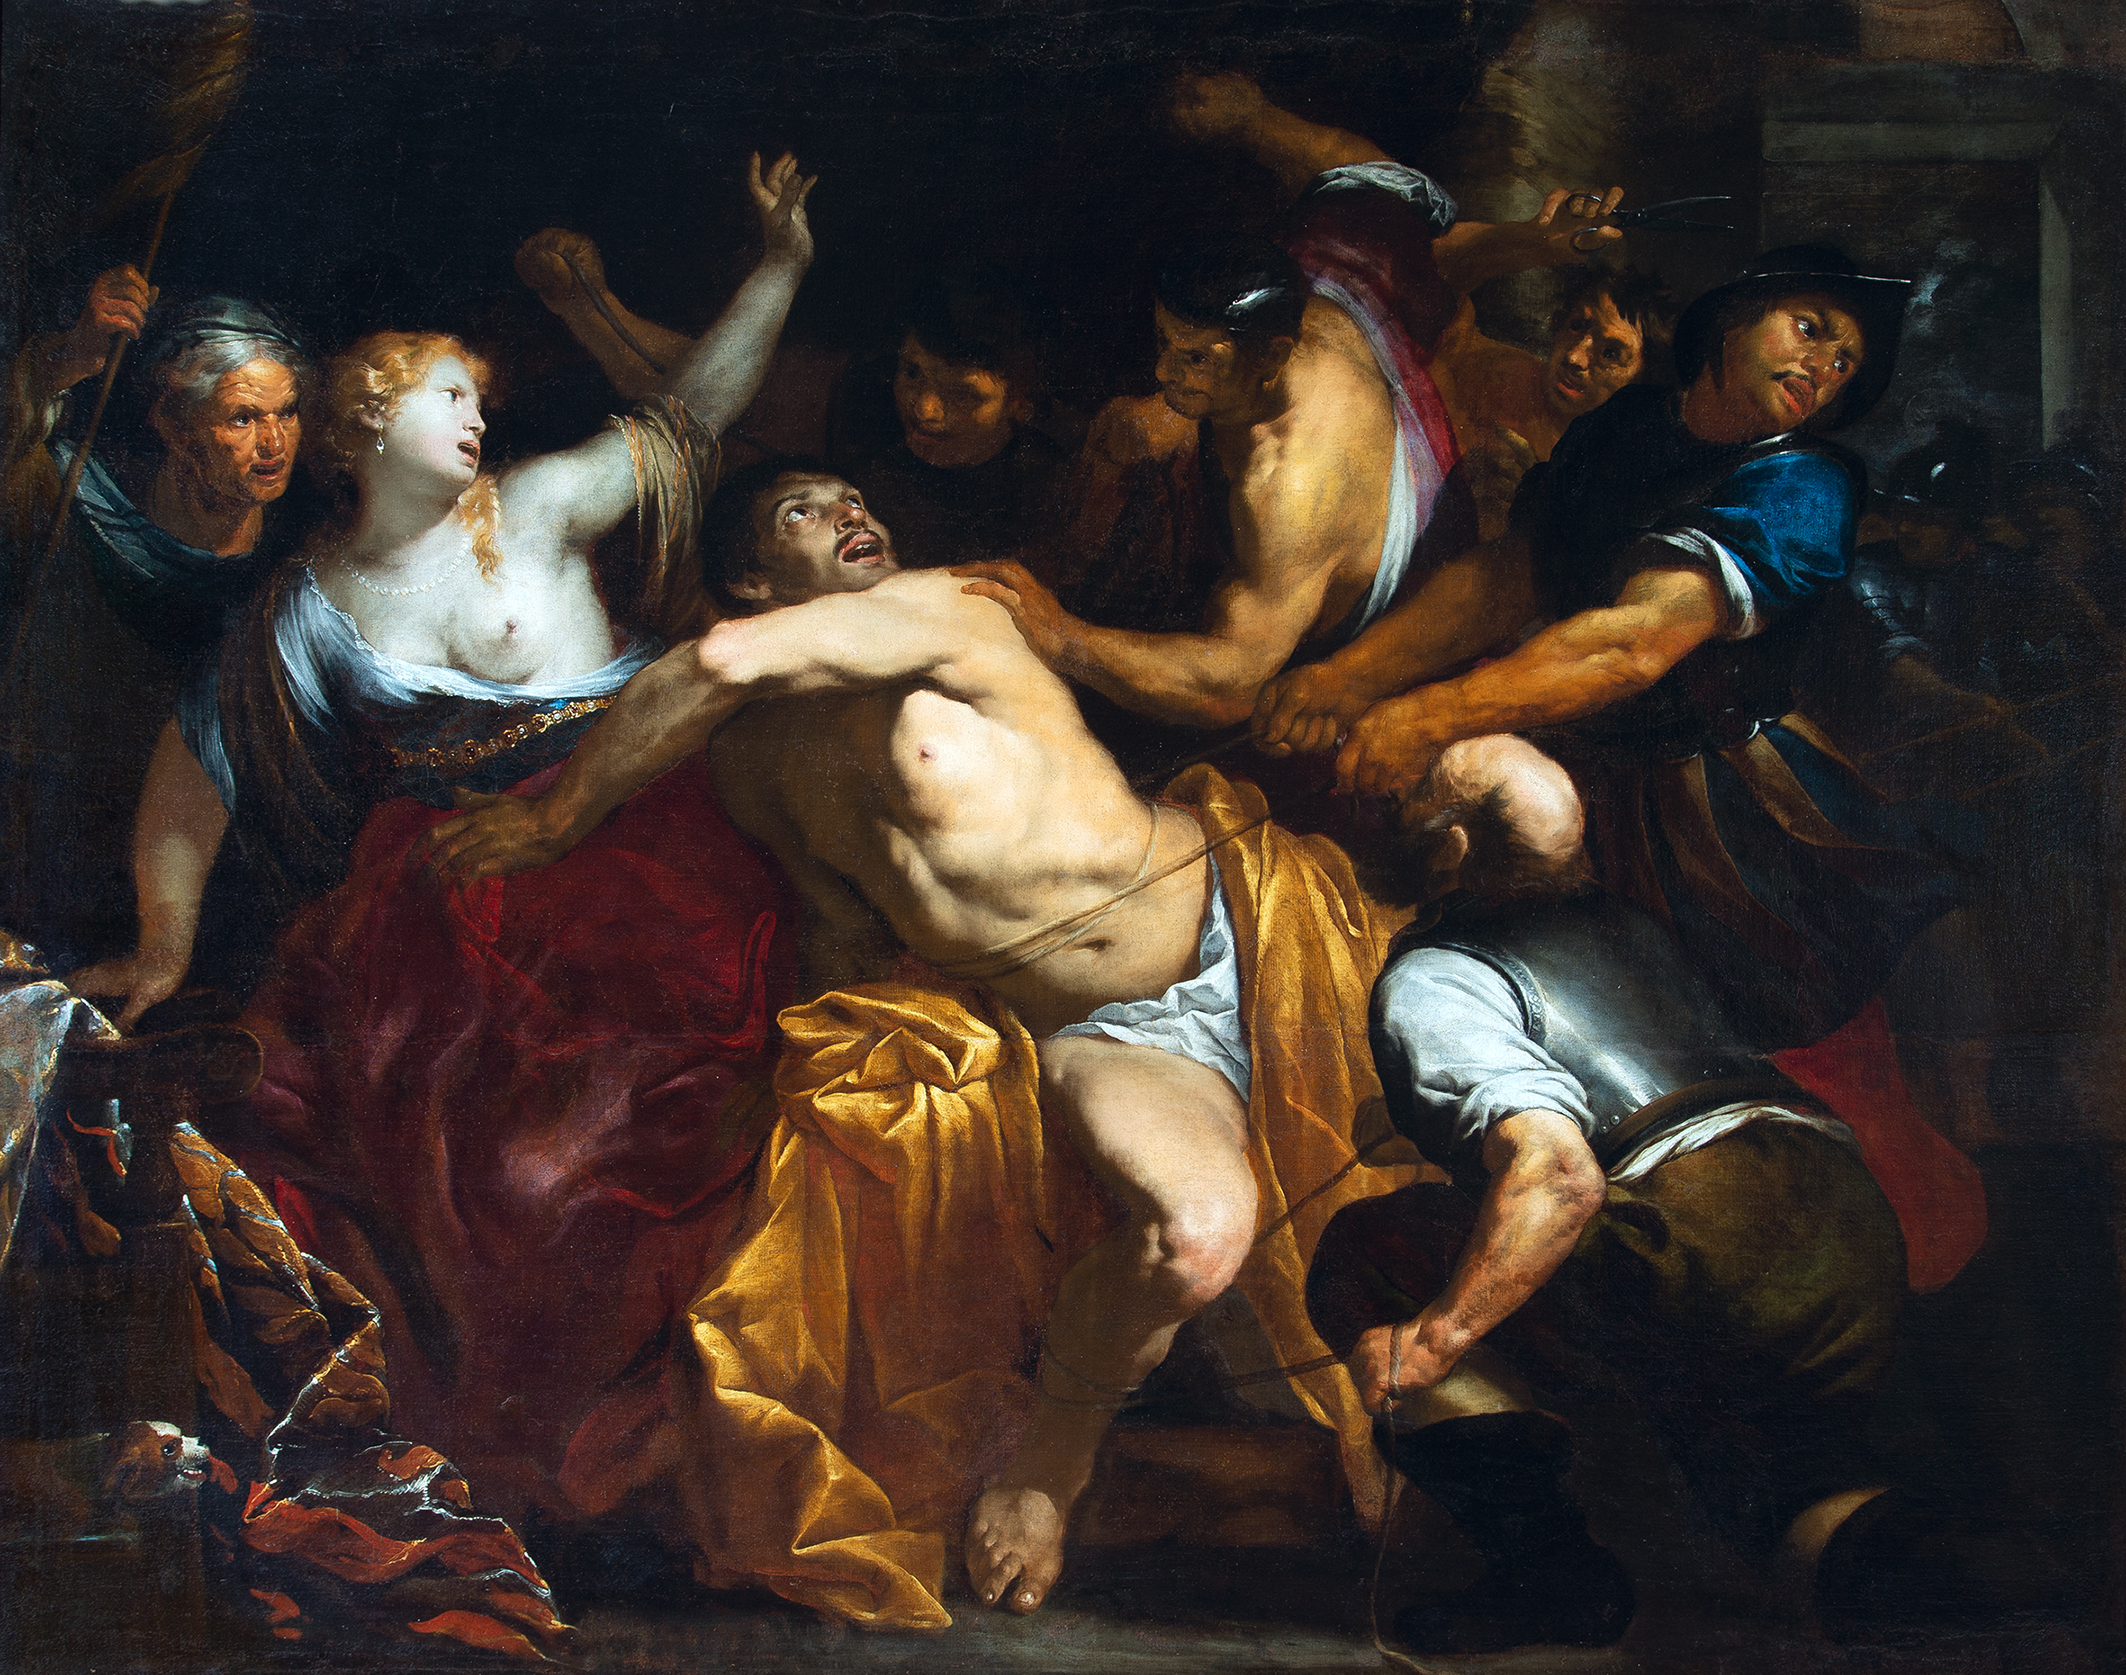 Superbarocco. La Genova di Rubens in mostra a Roma: le opere e gli eventi collaterali